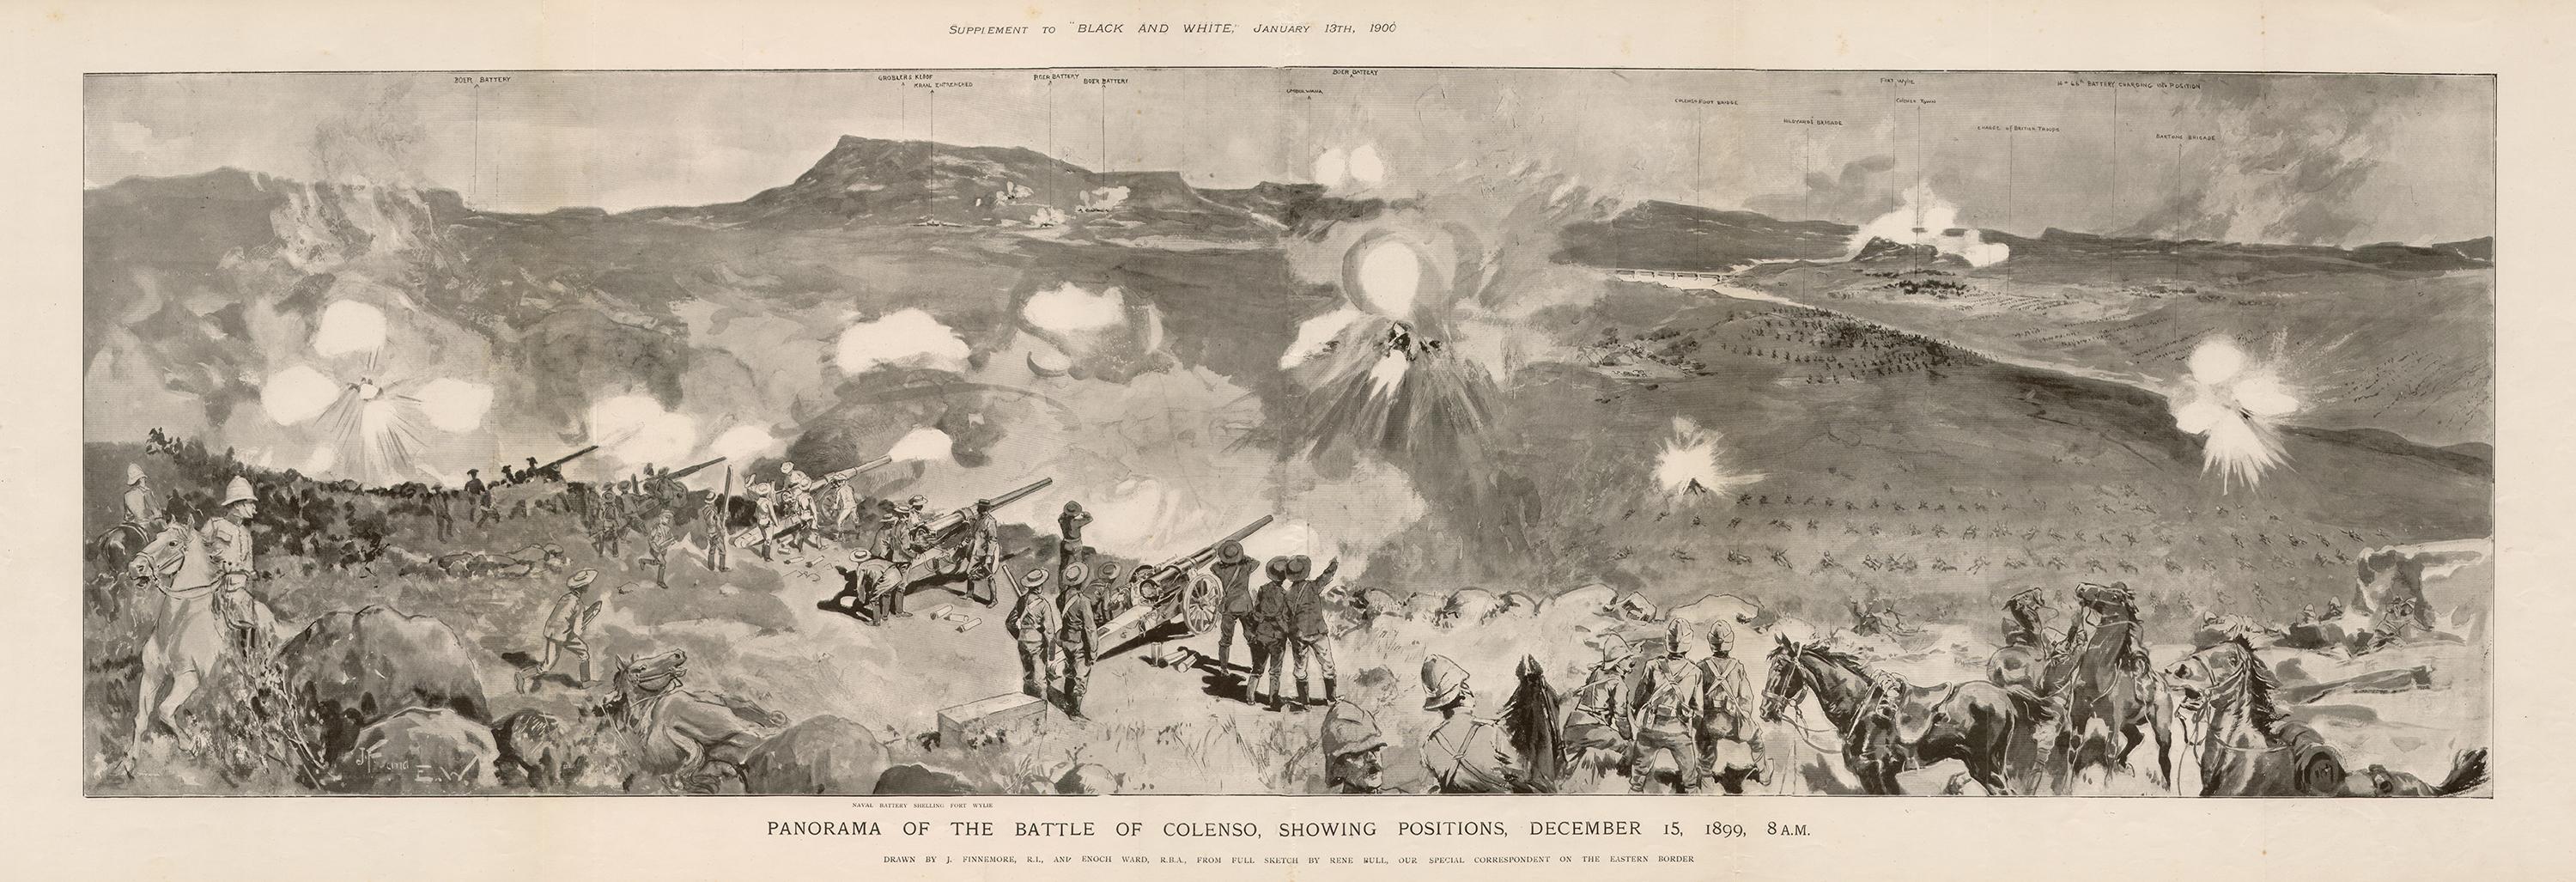 Boer War - Panorama der Schlacht von Colenso, Fotogravur einer militärischen Armee